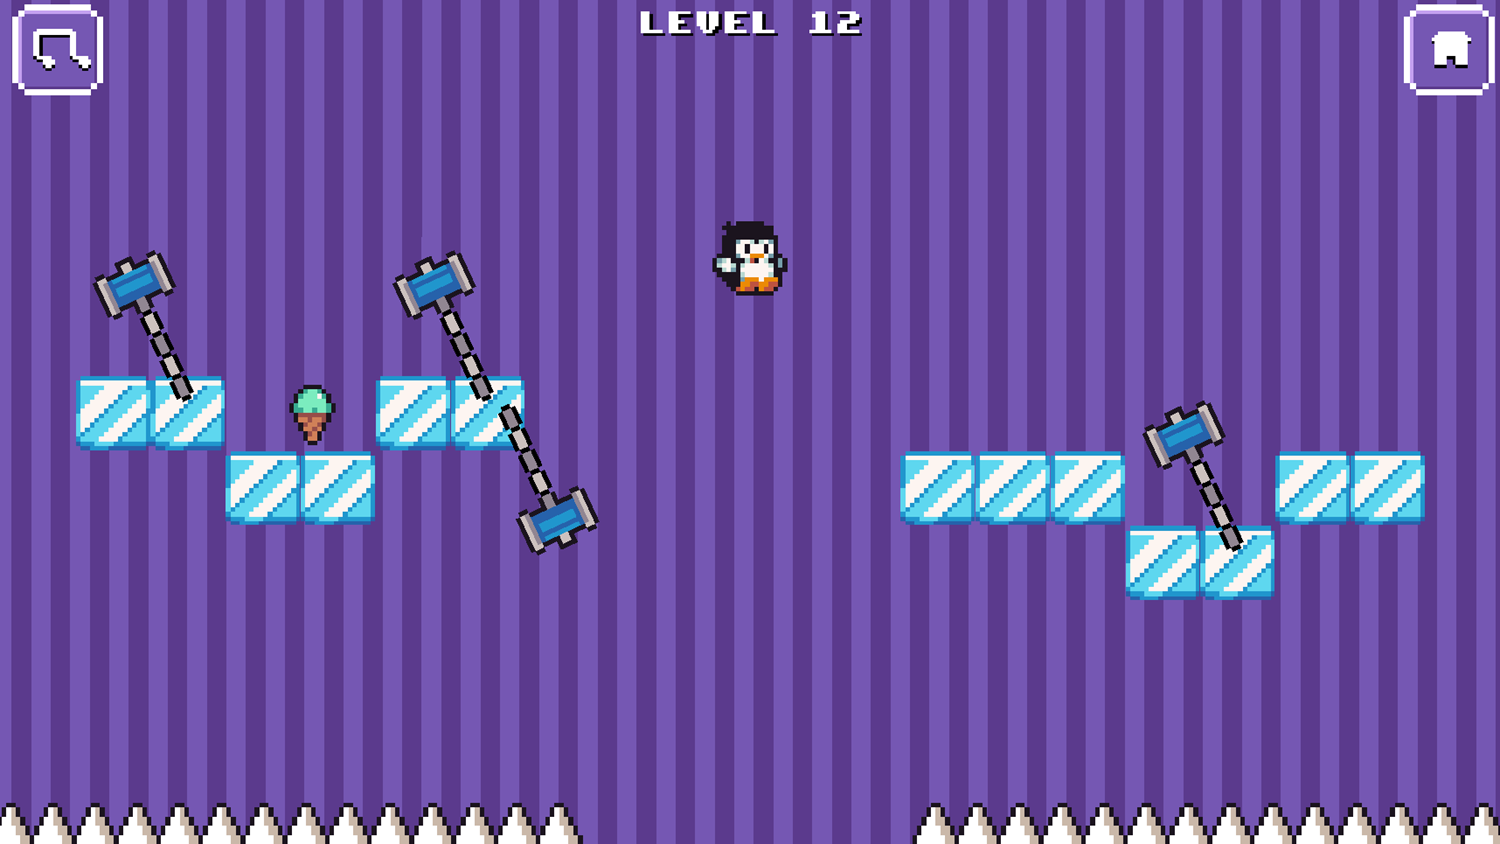 Where My Ice Cream Game Level Progress Screenshot.